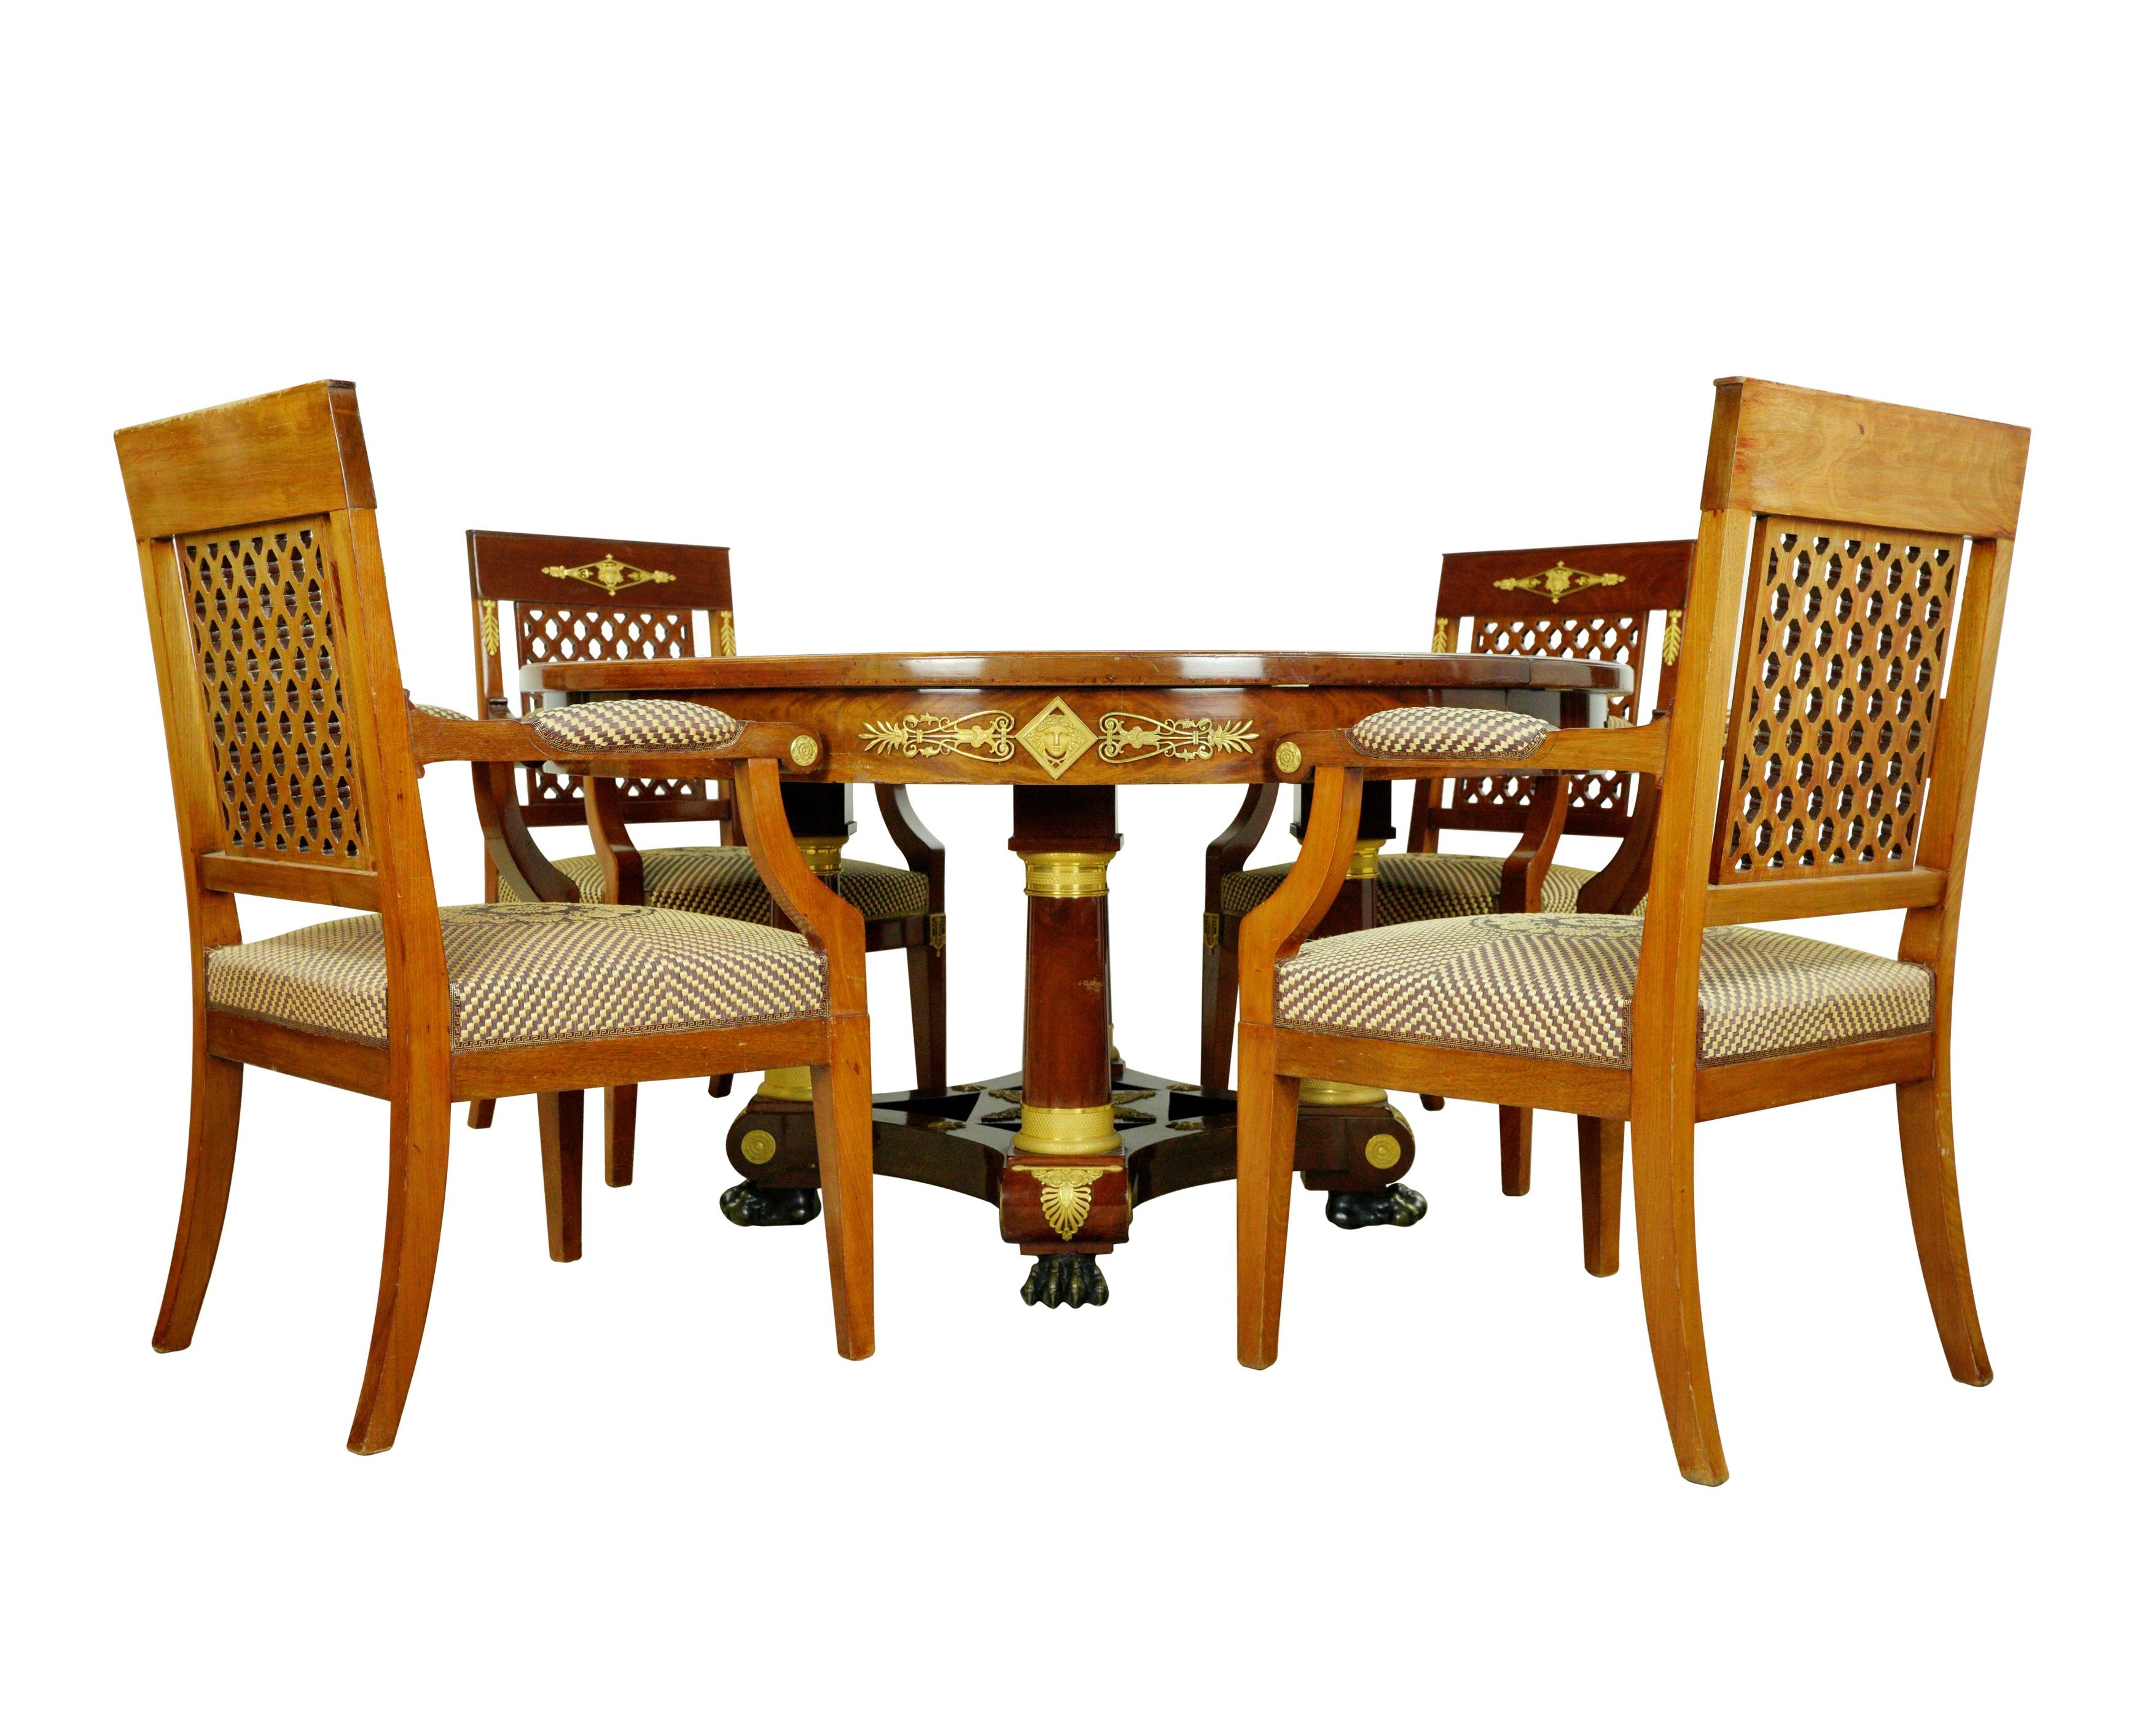 Dieses exquisite Möbelstück stammt aus einem Nachlass in Greenwich, Connecticut. Das Set besteht aus einem Tisch mit vier Platten und insgesamt zwölf Stühlen, acht ohne und vier mit Armlehnen. Die Stühle aus mitteltönigem Holz mit Gitterrücken sind